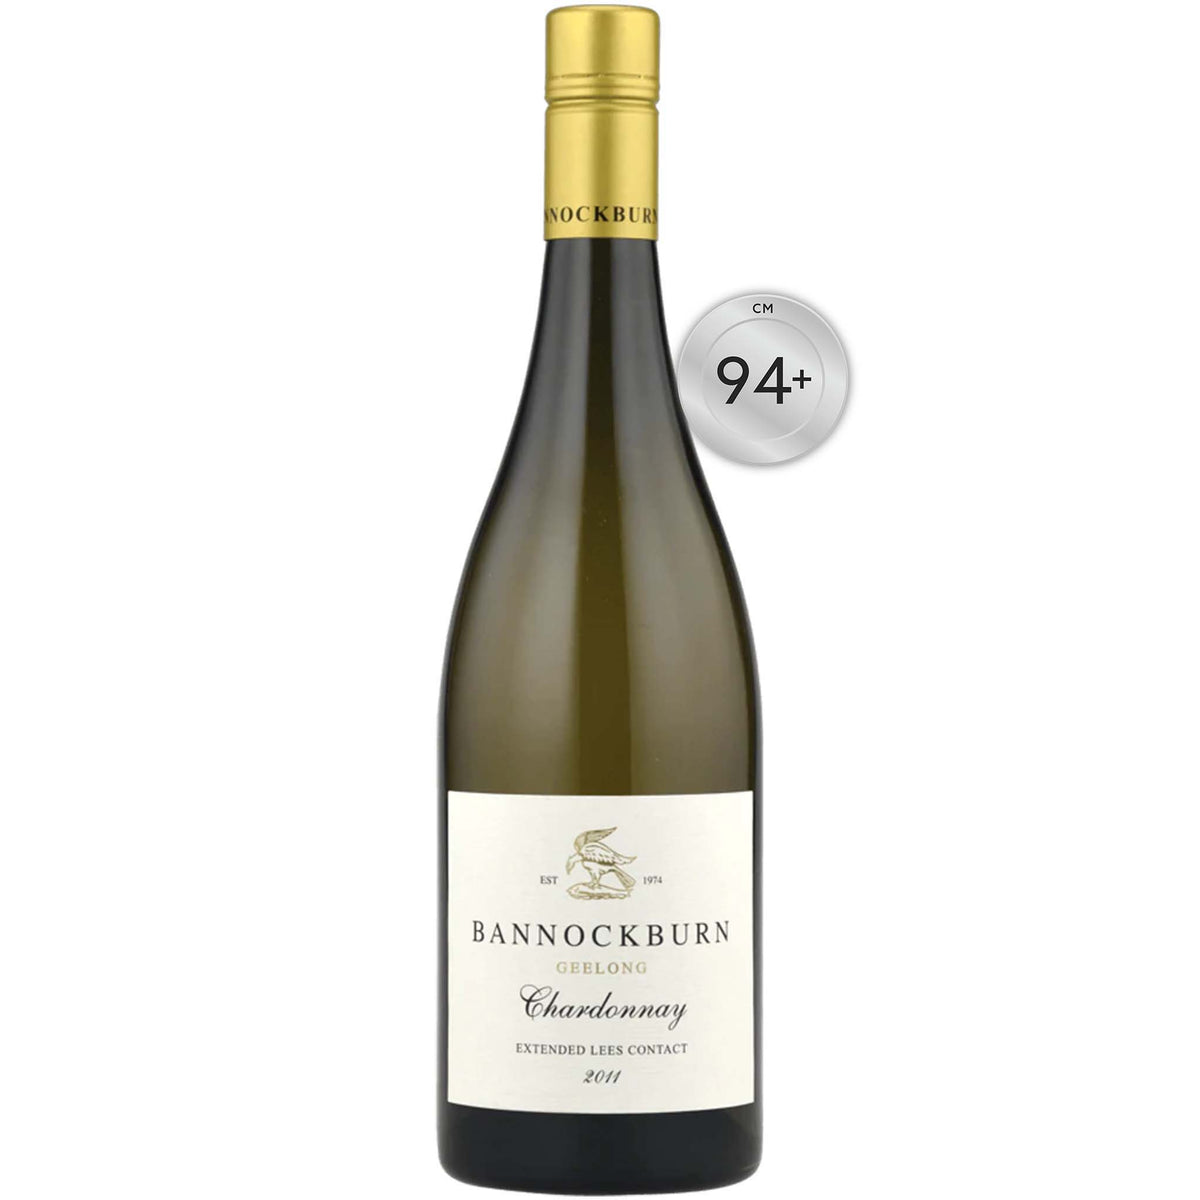 Bannockburn-Chardonnay-2011